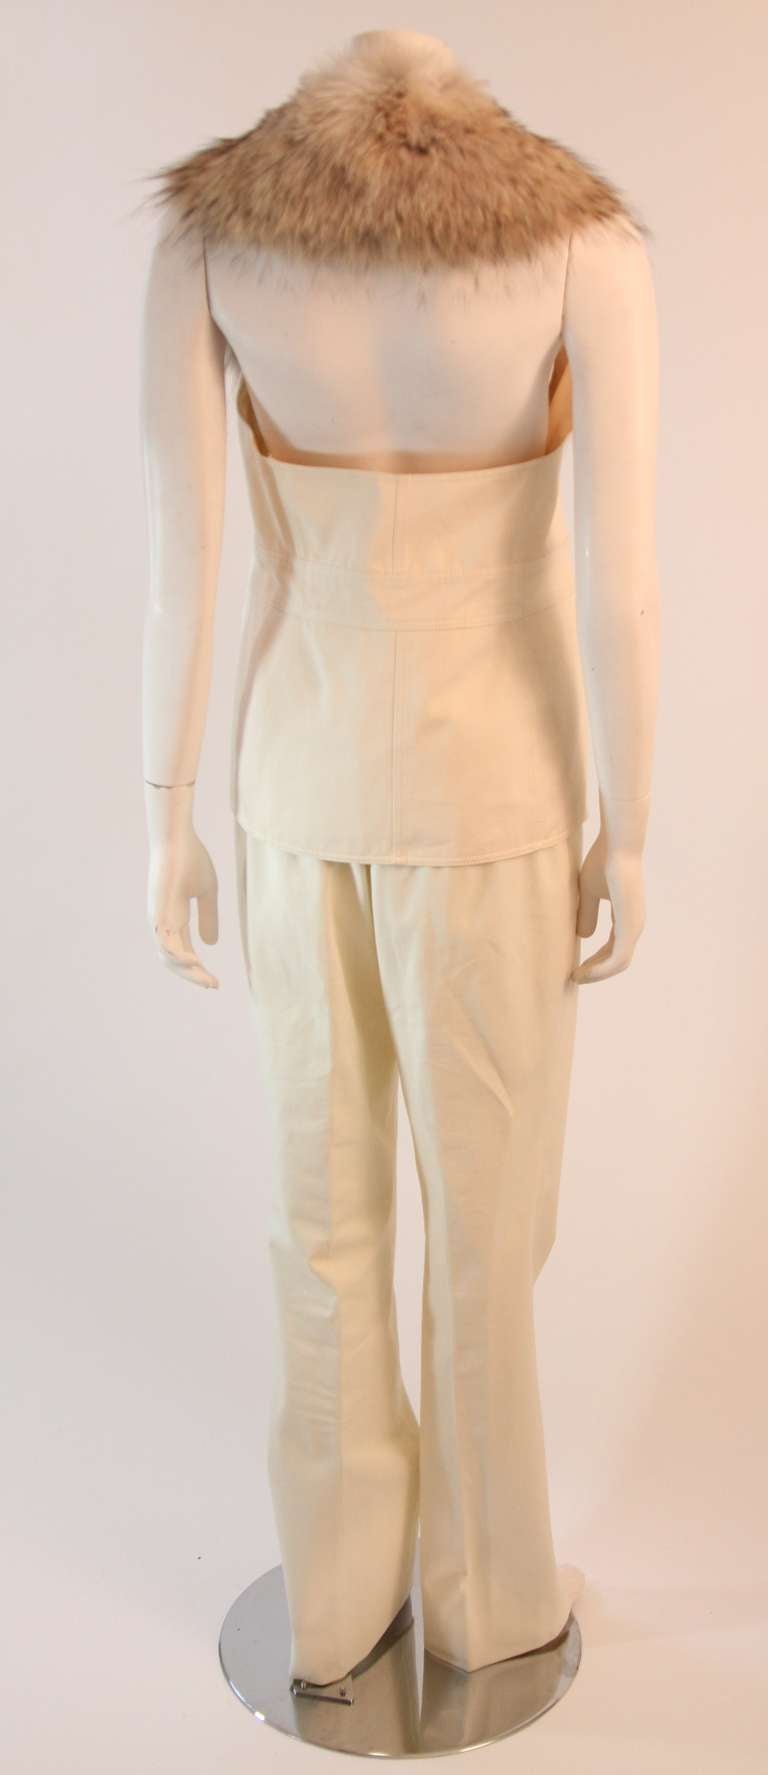 Michael Kors Fur trimmed vest and pants Two Piece Utility Set Size 10 3